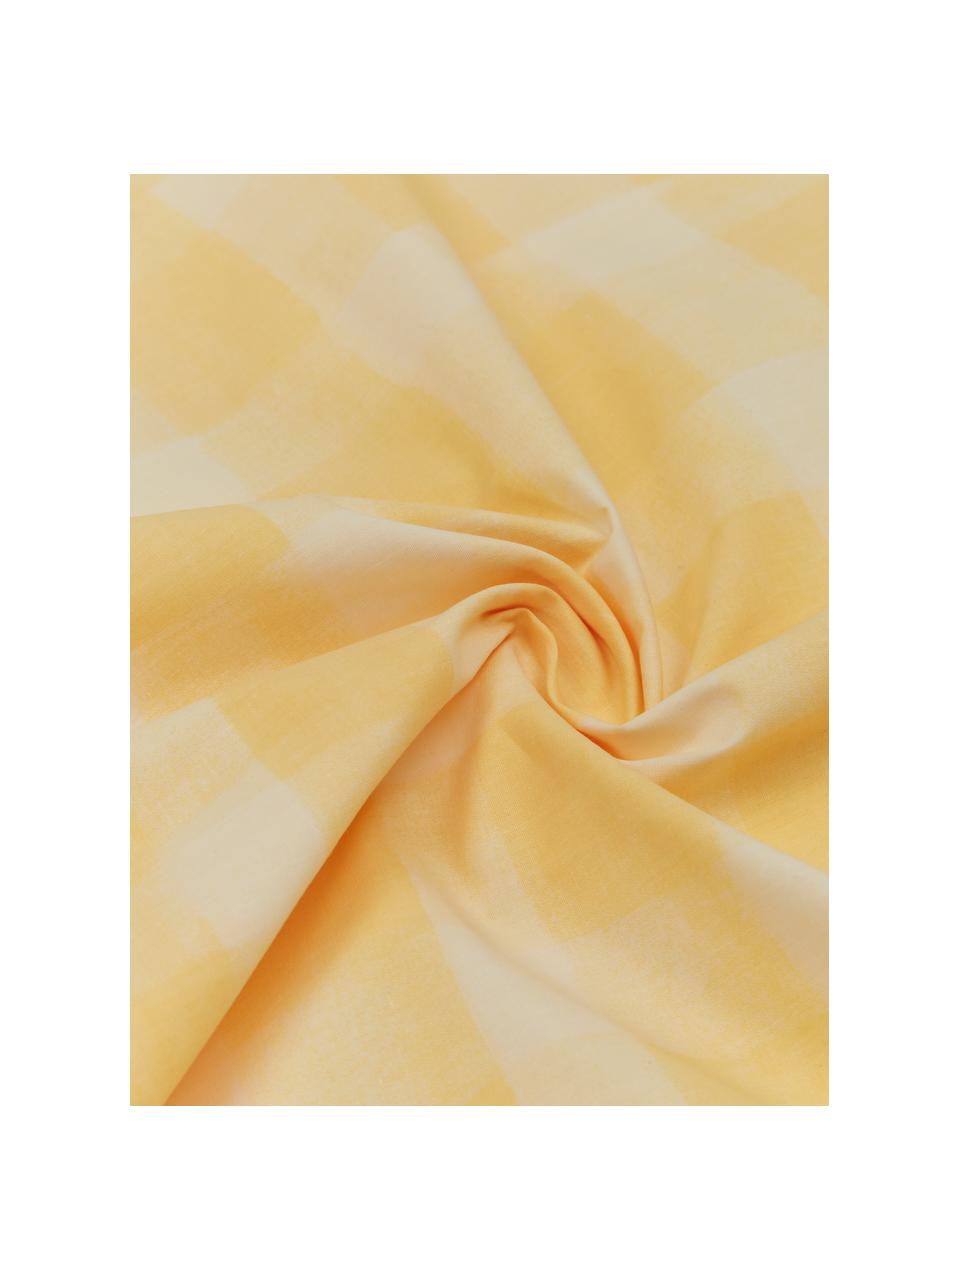 Poszewka na poduszkę z perkalu bawełnianego Milène od Candice Gray, 2 szt., Żółty, S 40 x D 80 cm